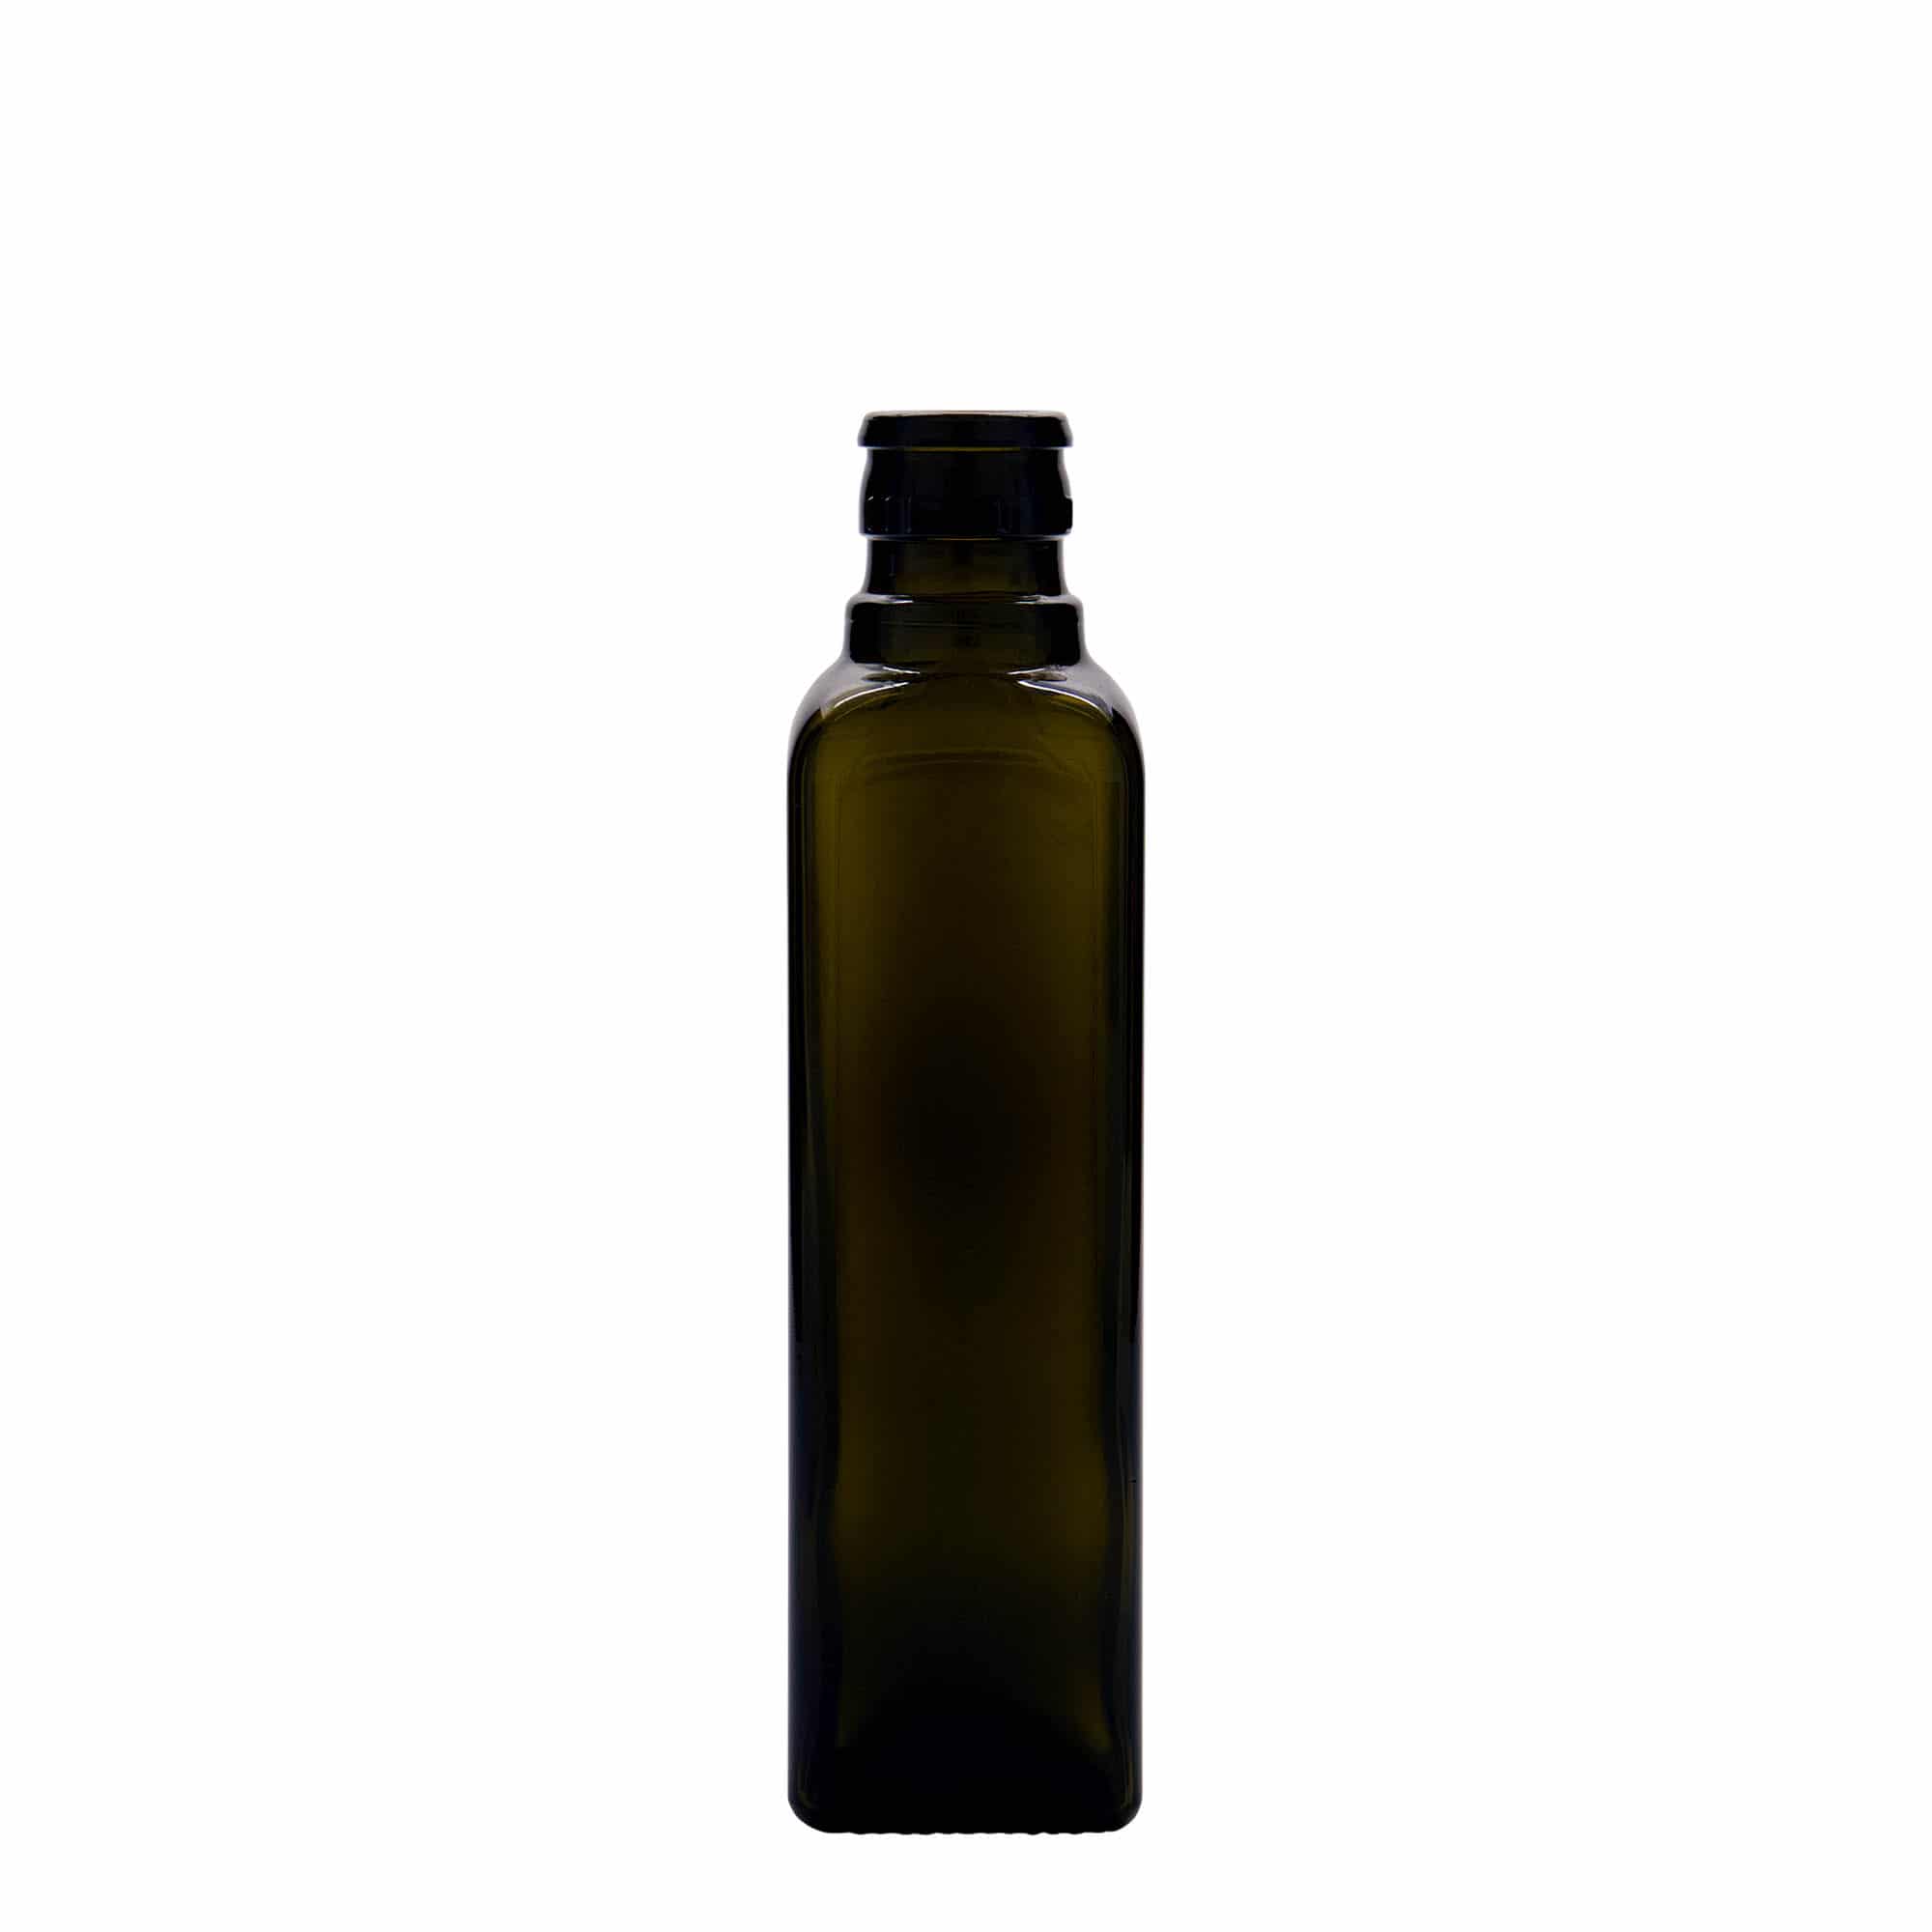 Lahev na ocet/olej 250 ml 'Quadra', sklo, čtvercová, starožitná zelená, ústí: DOP